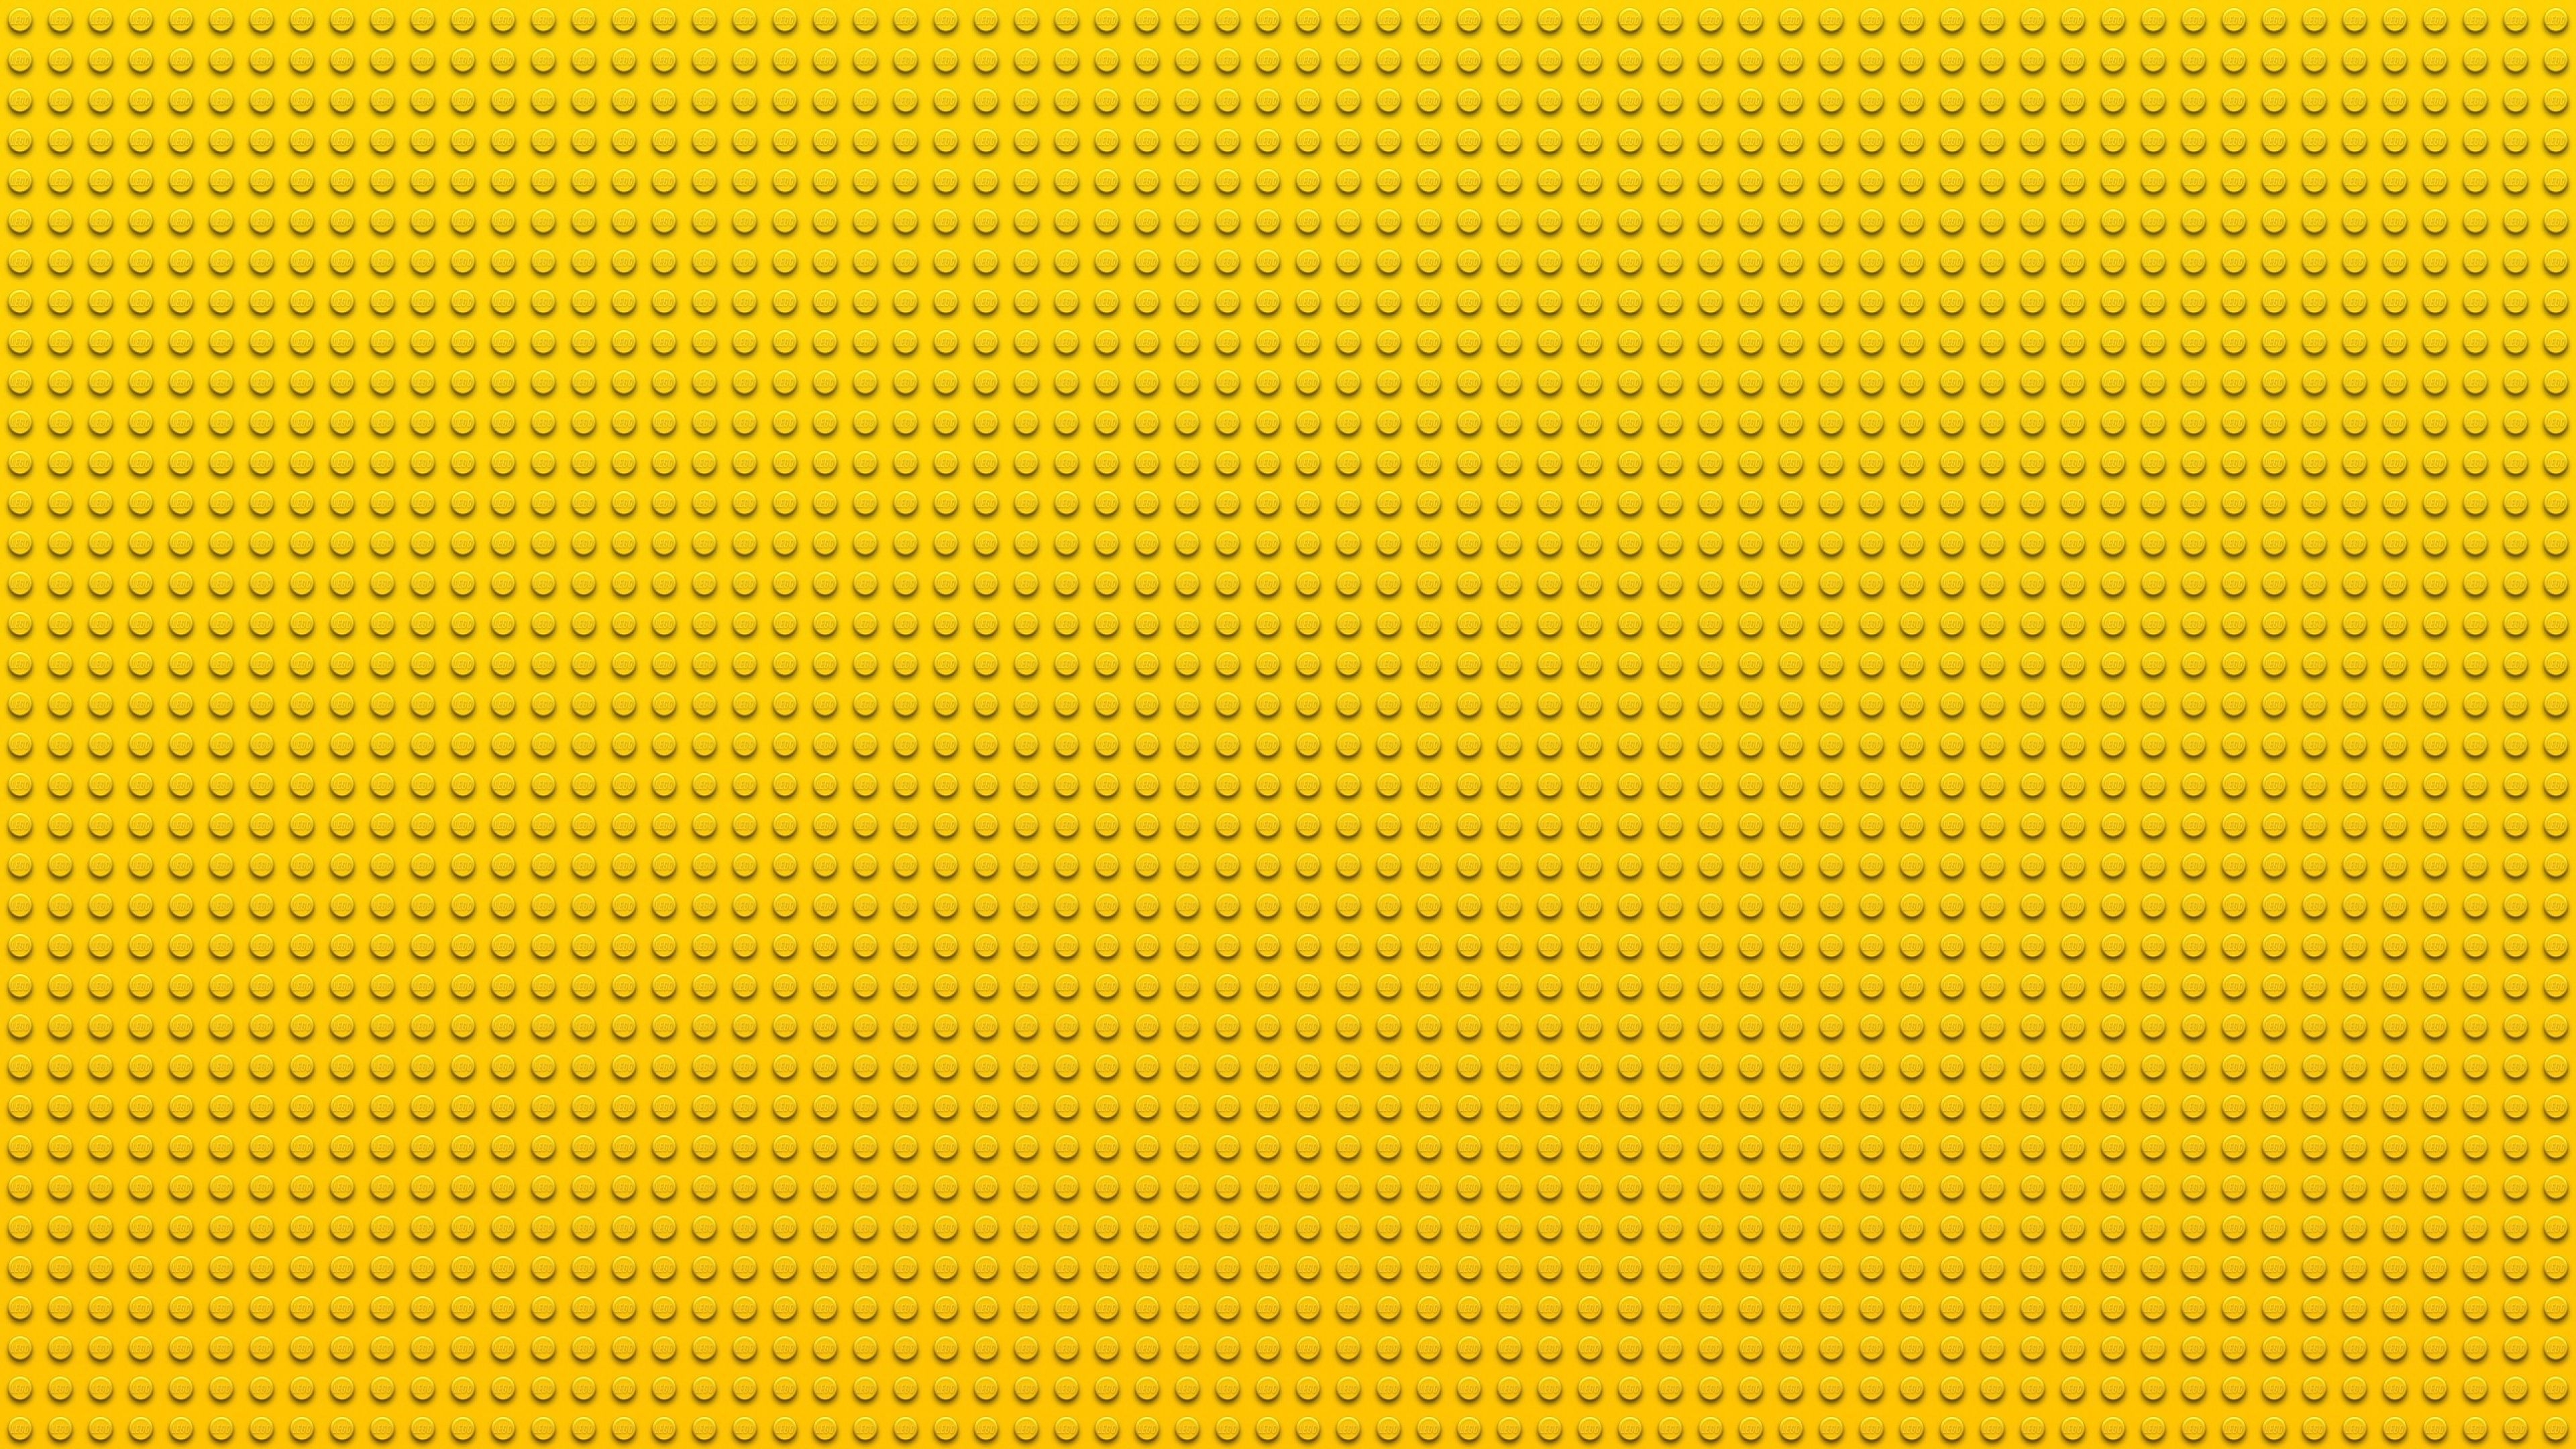 Hình nền máy tính màu vàng sẽ giúp bạn trang trí chiếc máy tính của mình trở nên đặc biệt hơn. Với sắc màu vàng sáng rực rỡ, hình nền này sẽ khiến màn hình máy tính của bạn trở nên nổi bật và cá tính hơn bao giờ hết.